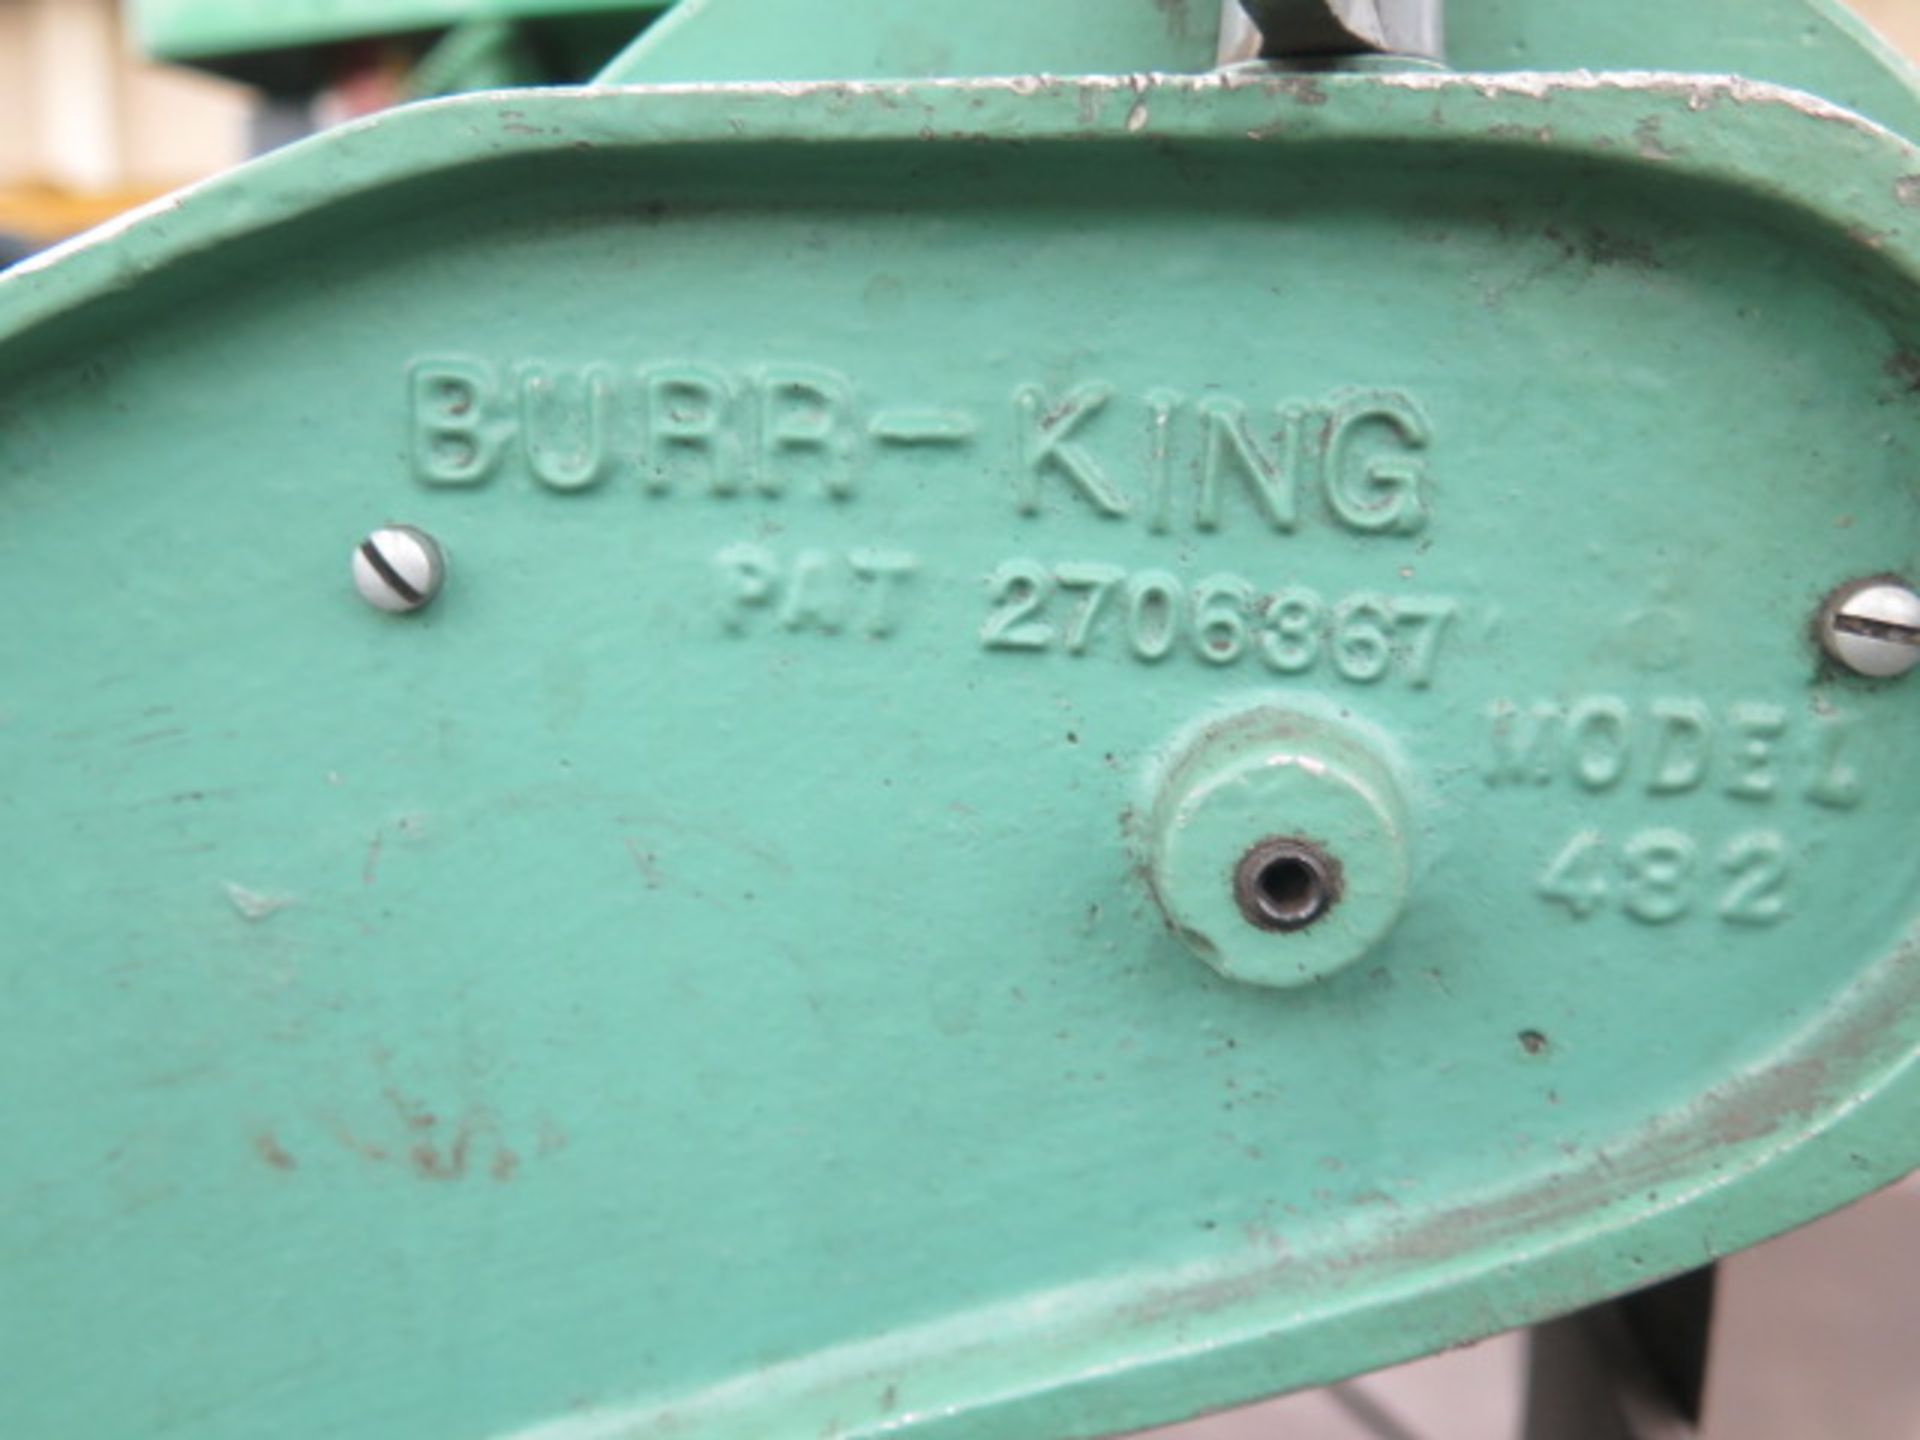 Burr King mdl. 482 2” Pedestal Belt Sander - Image 4 of 4